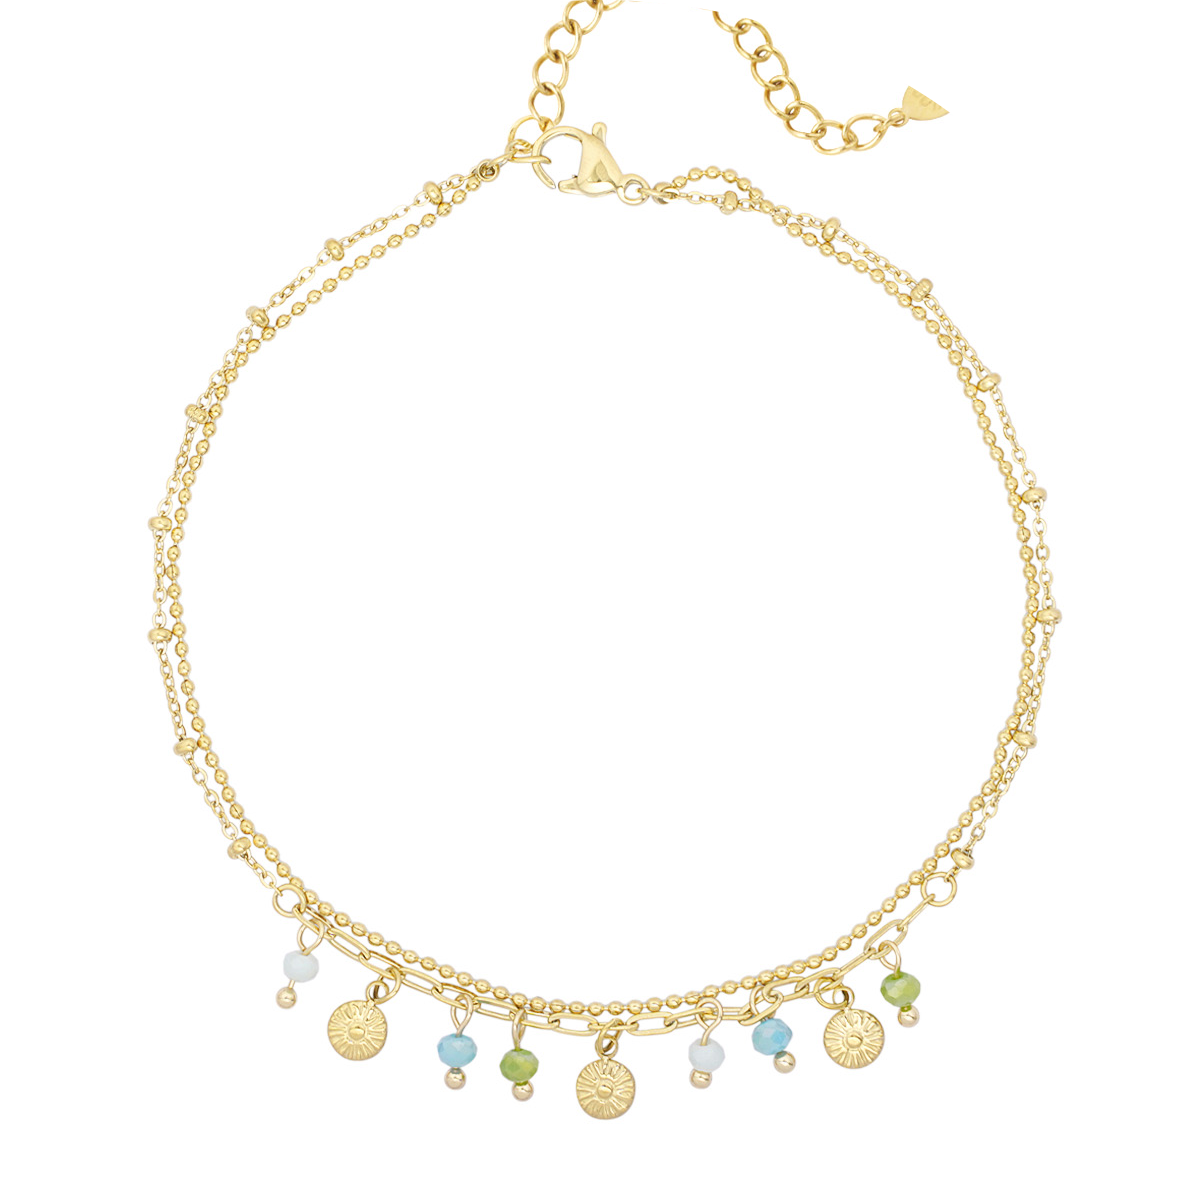 Edelstahl - Armband mit Münzen und Perlen - blau-grün/gold